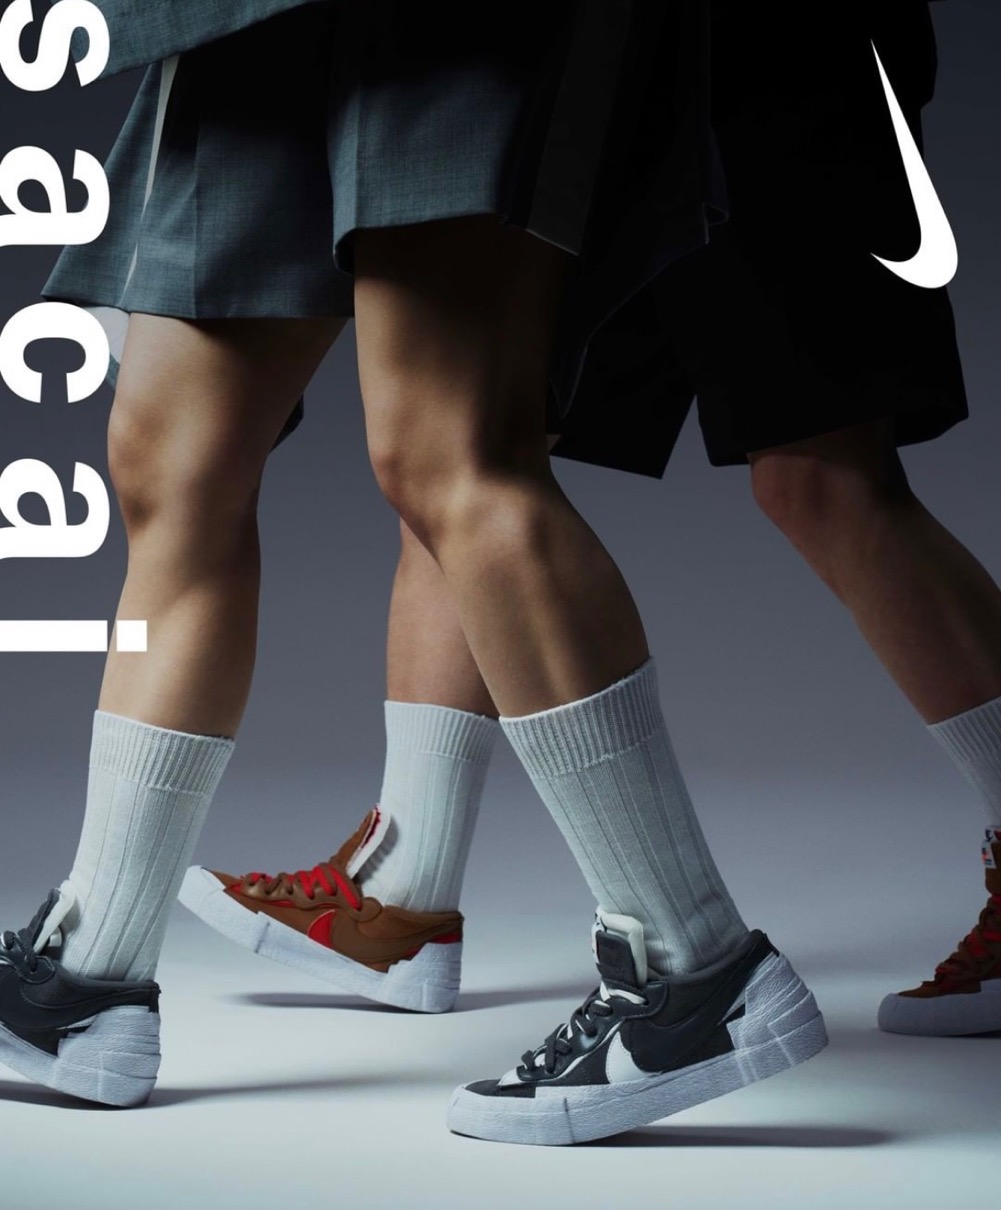 Sacai × Nike】Blazer Low “Iron Grey”  “Light British  Tan”が国内7月29日/7月31日に発売予定 | UP TO DATE